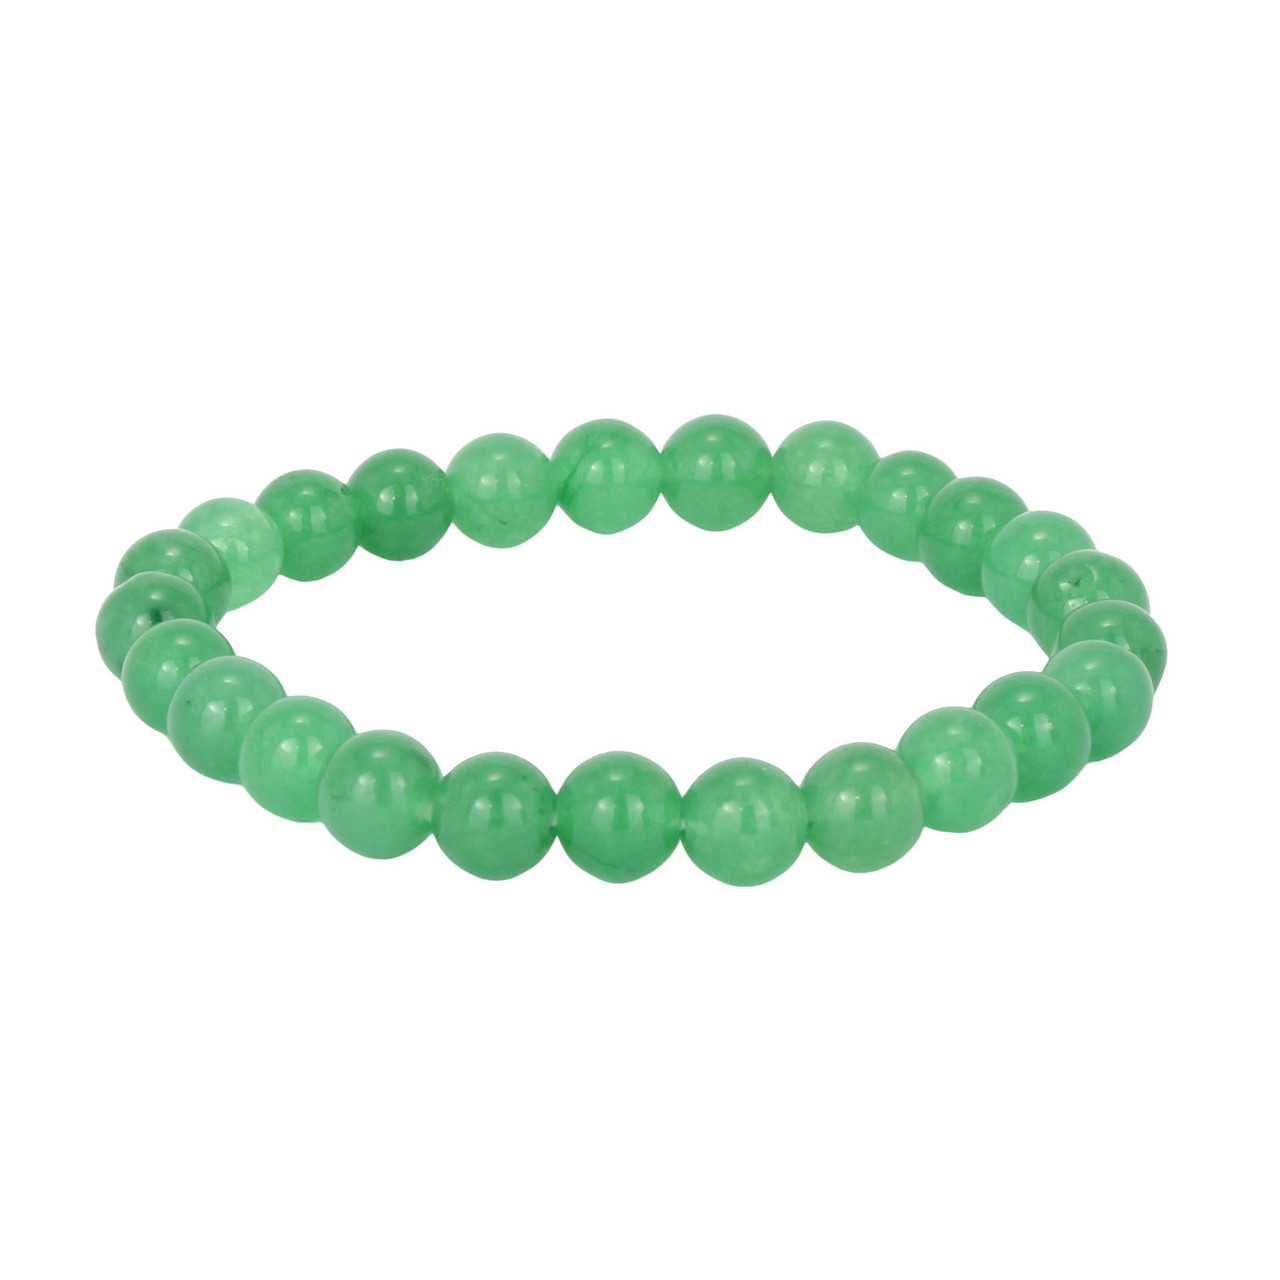 Green Aventurine Gemstone Bracelet for Opportunity